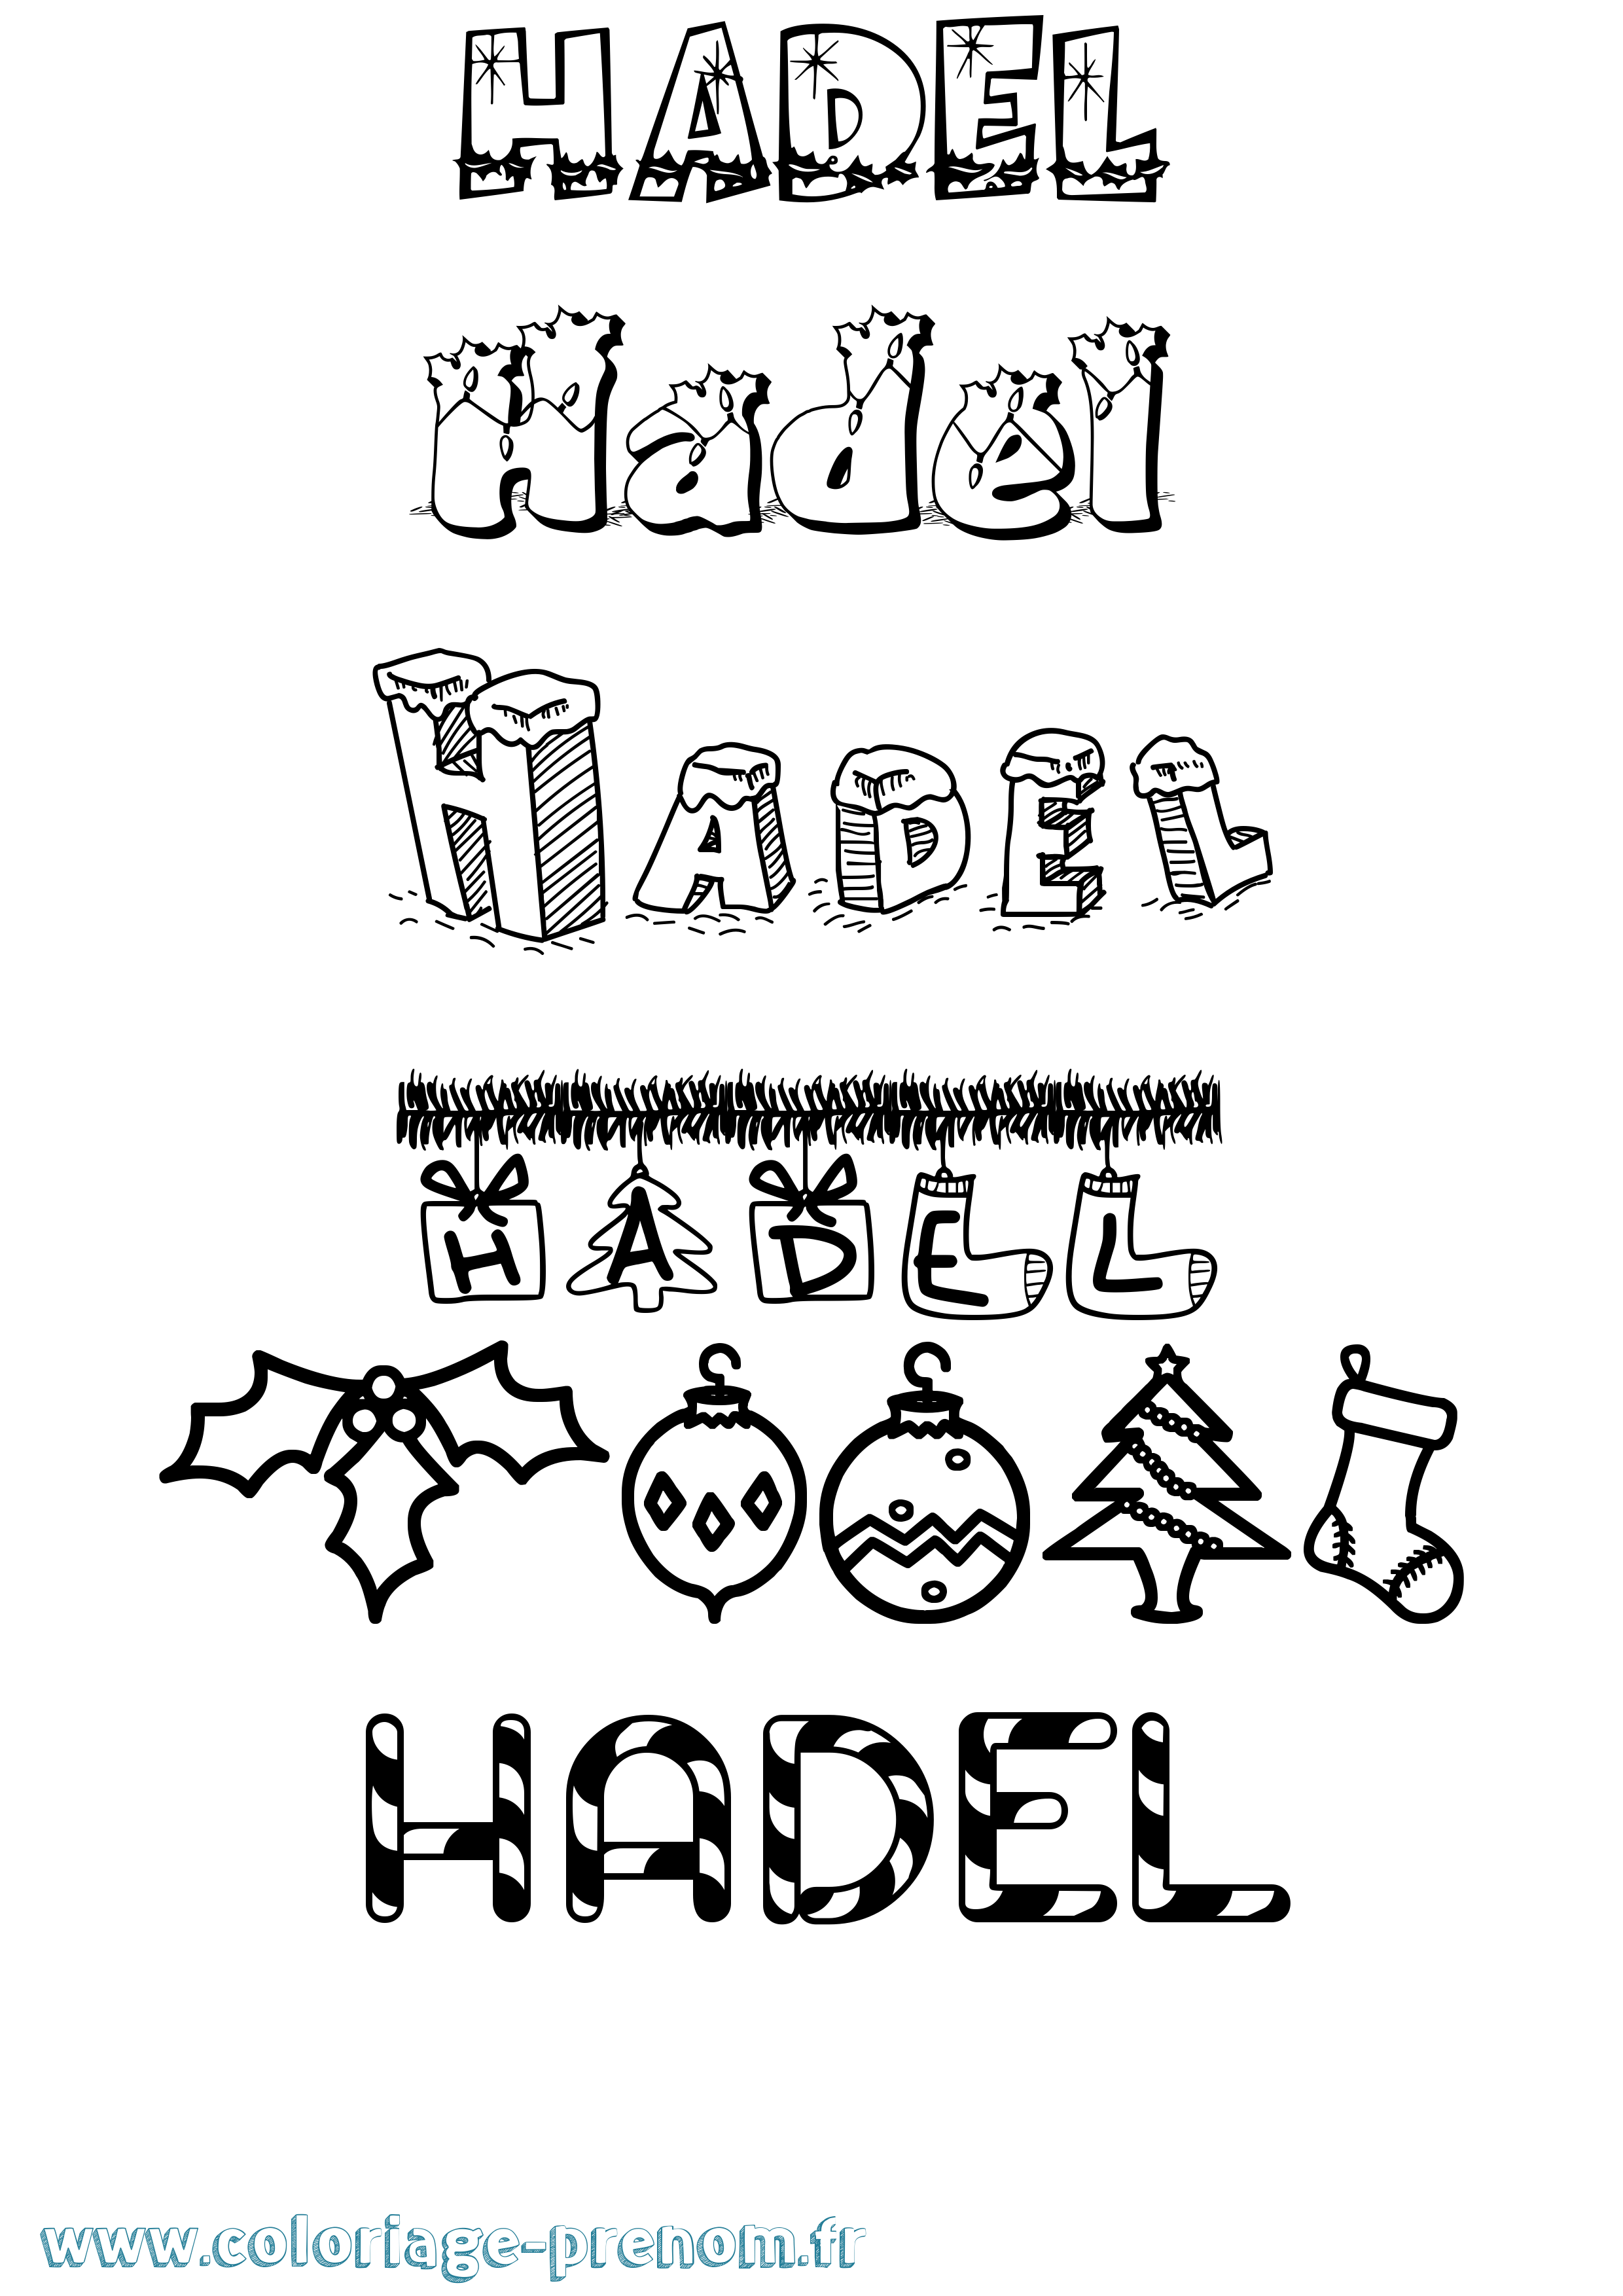 Coloriage prénom Hadel Noël